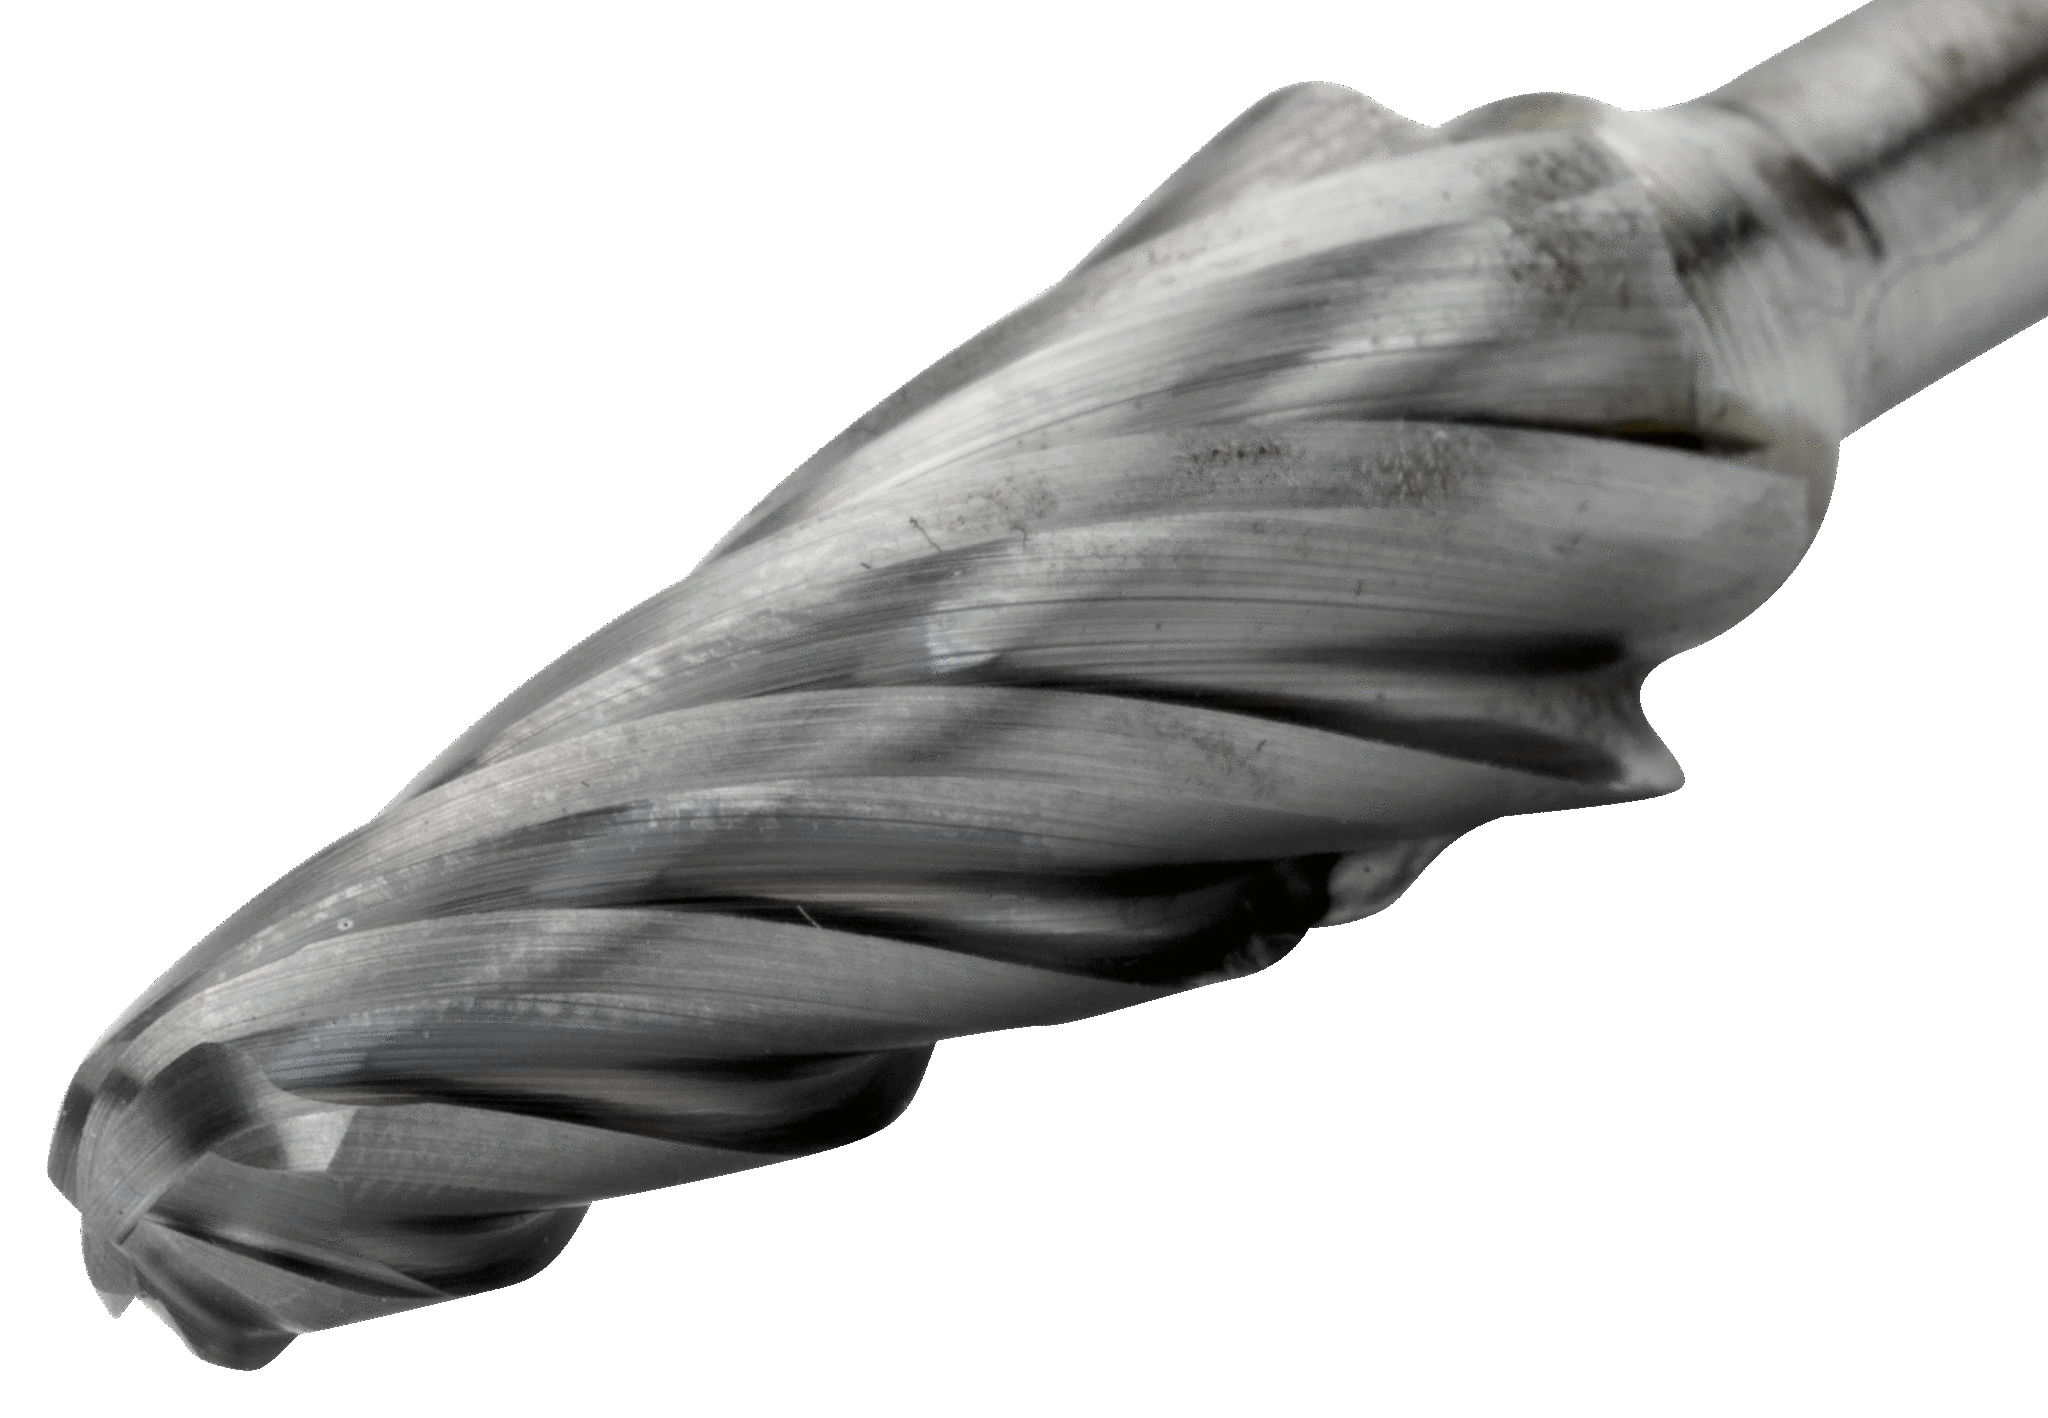 картинка Твердосплавные борфрезы с конической скругленной головкой по алюминию BAHCO L1230AL06 от магазина "Элит-инструмент"